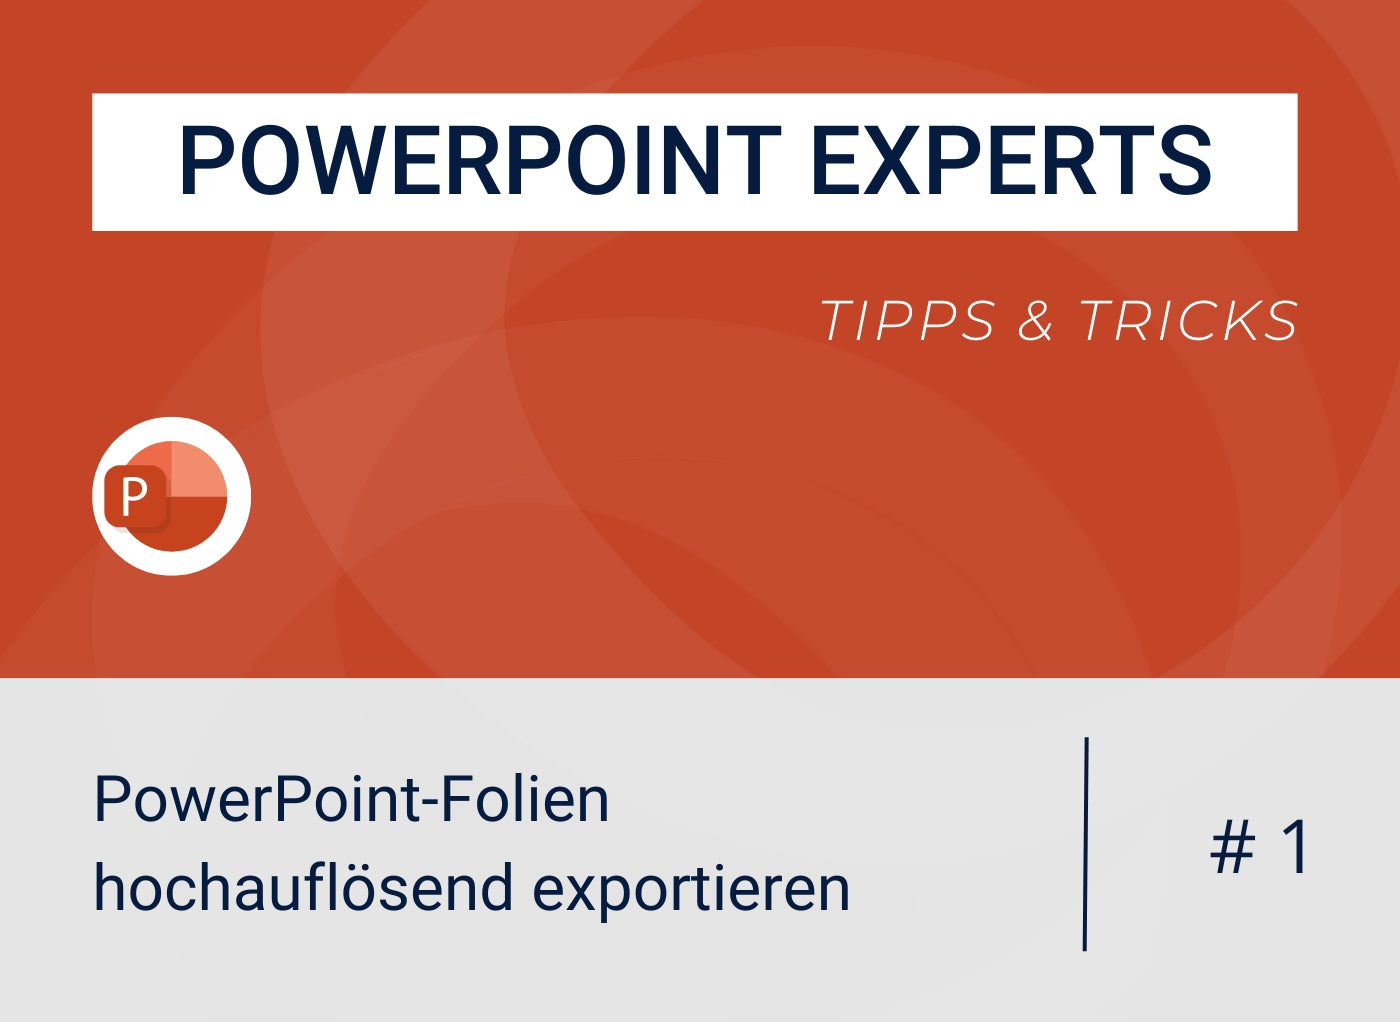 PowerPoint-Folien hochauflösend exportieren (mit hohem DPI-Wert)